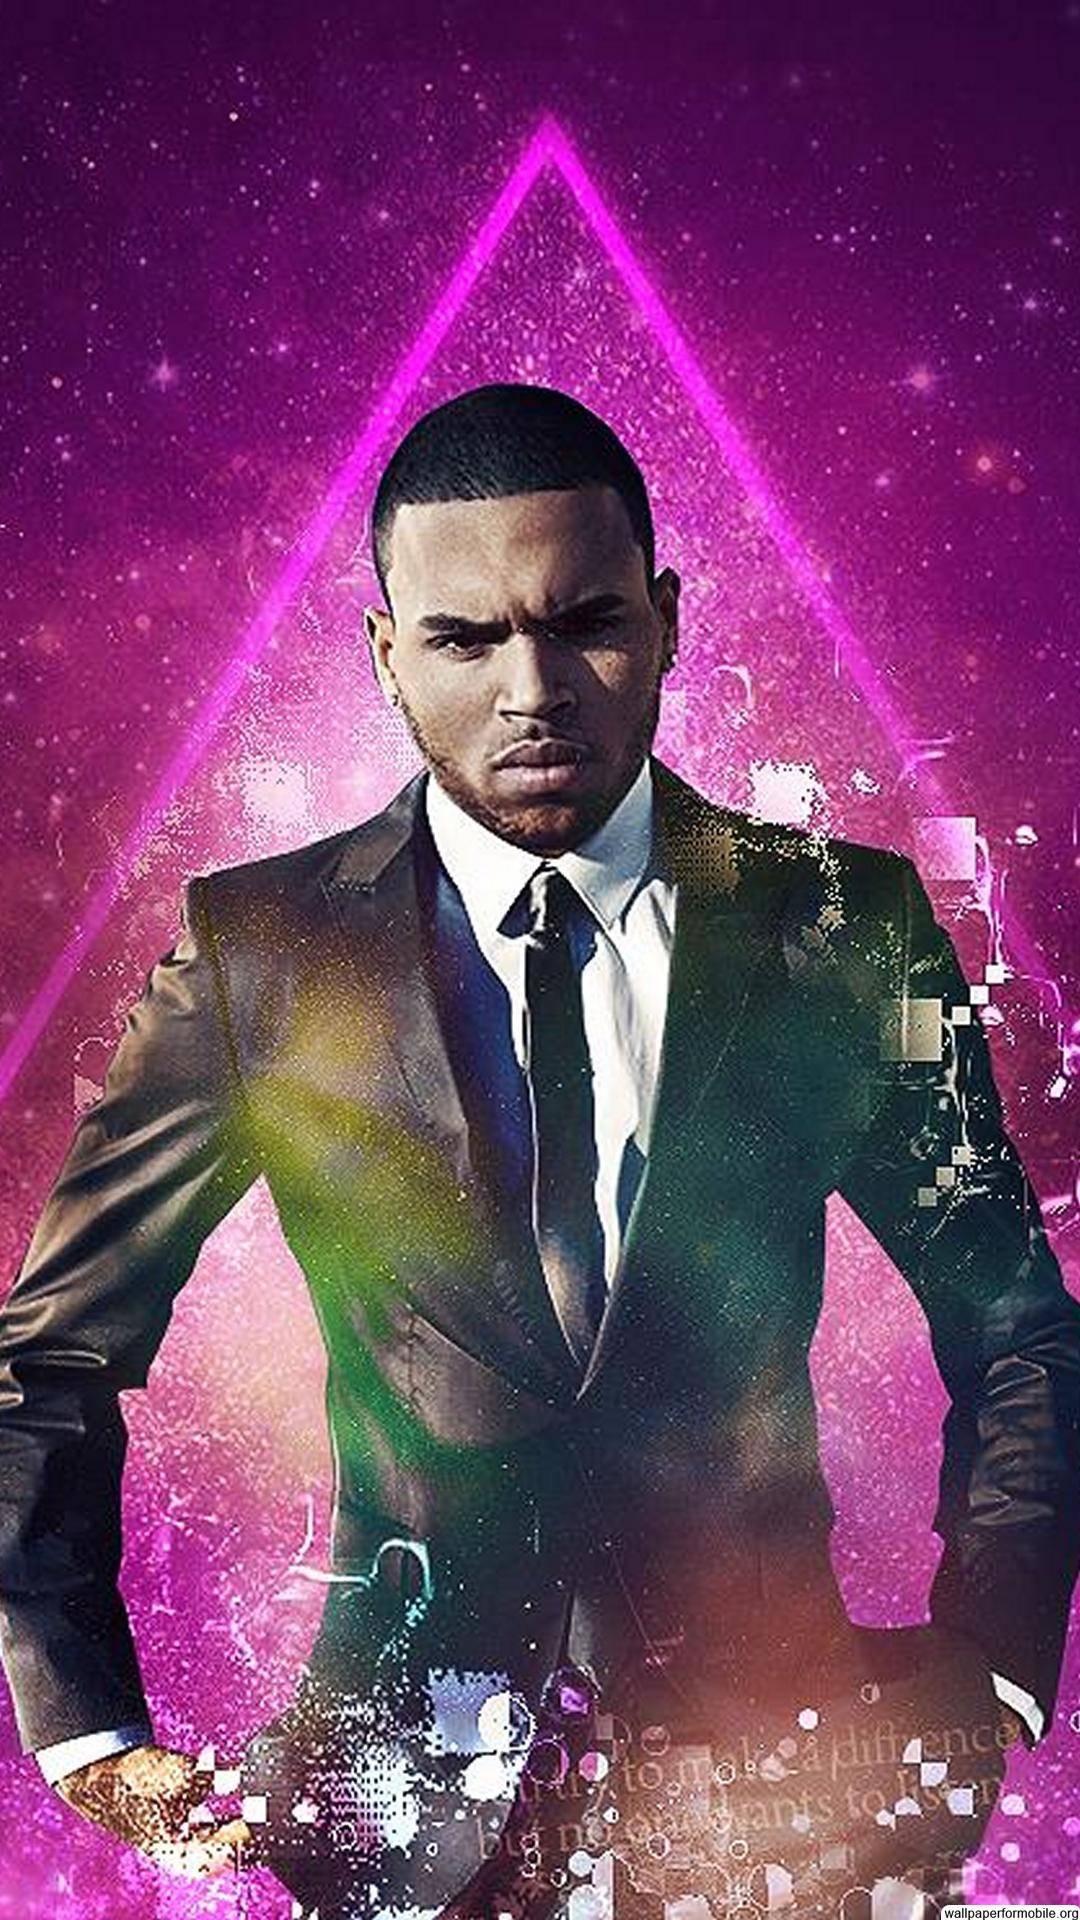 Chris Brown 2017 Wallpapers Wallpaper Cave